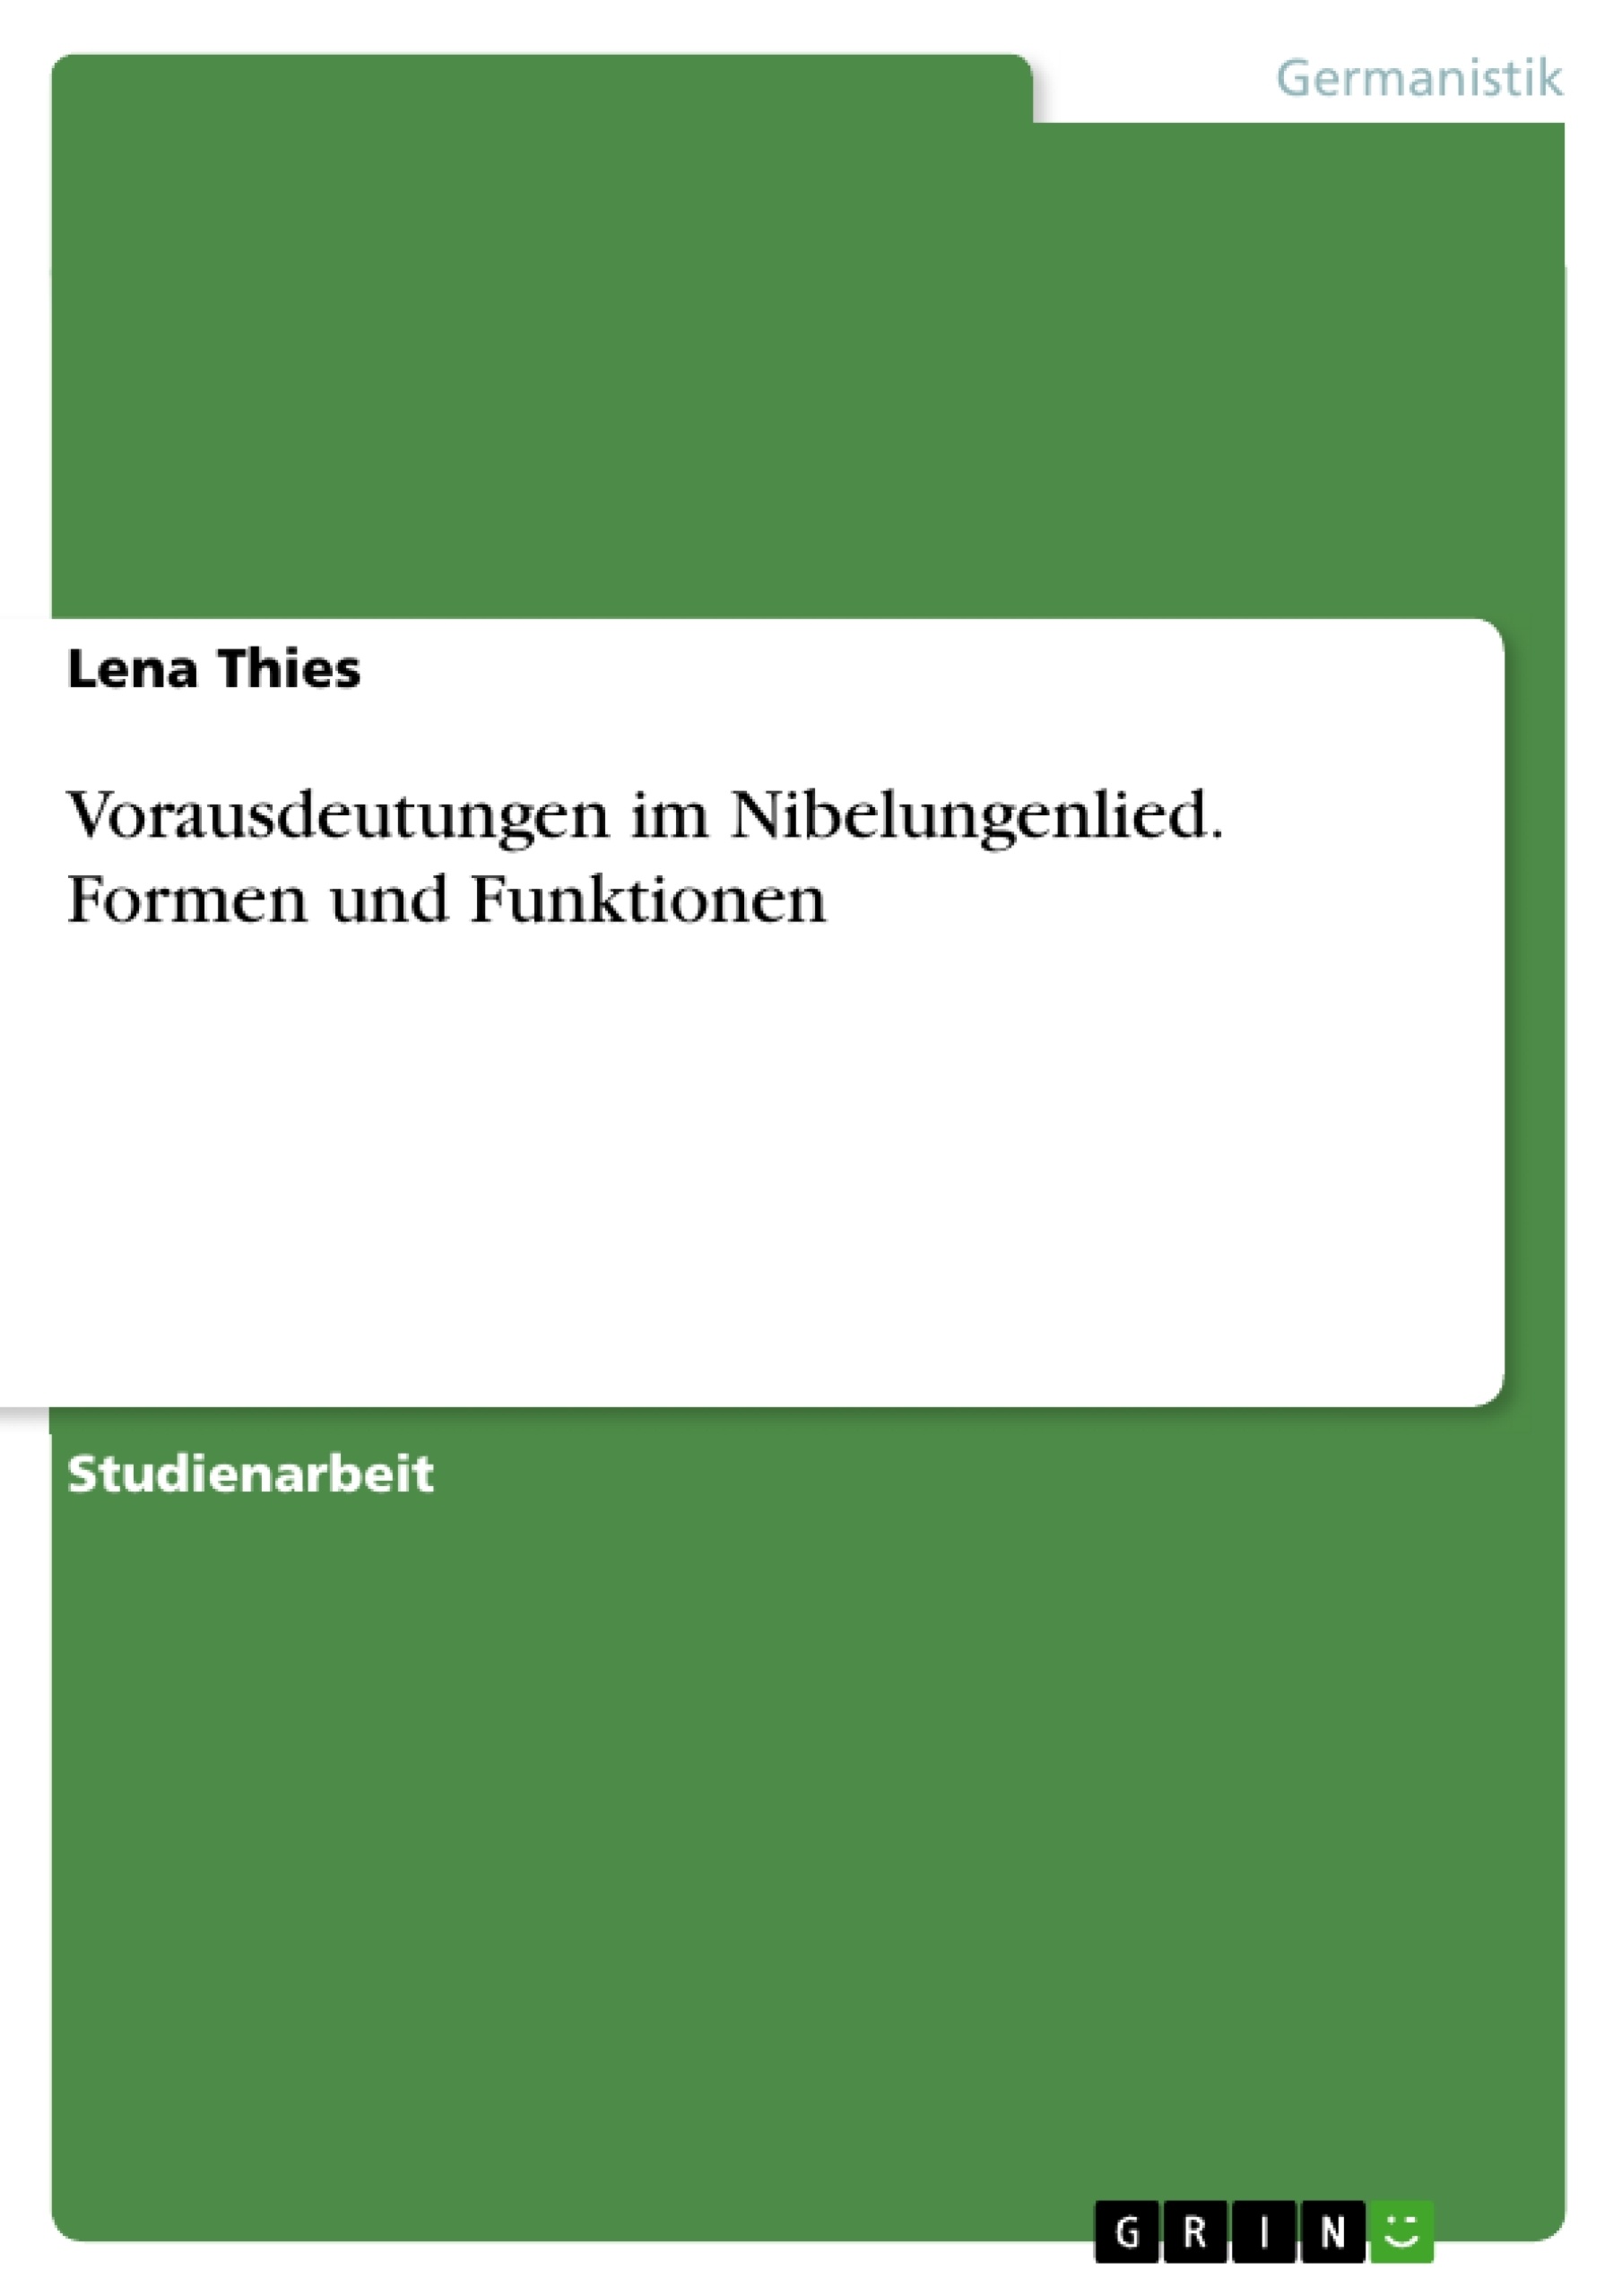 Título: Vorausdeutungen im Nibelungenlied. Formen und Funktionen